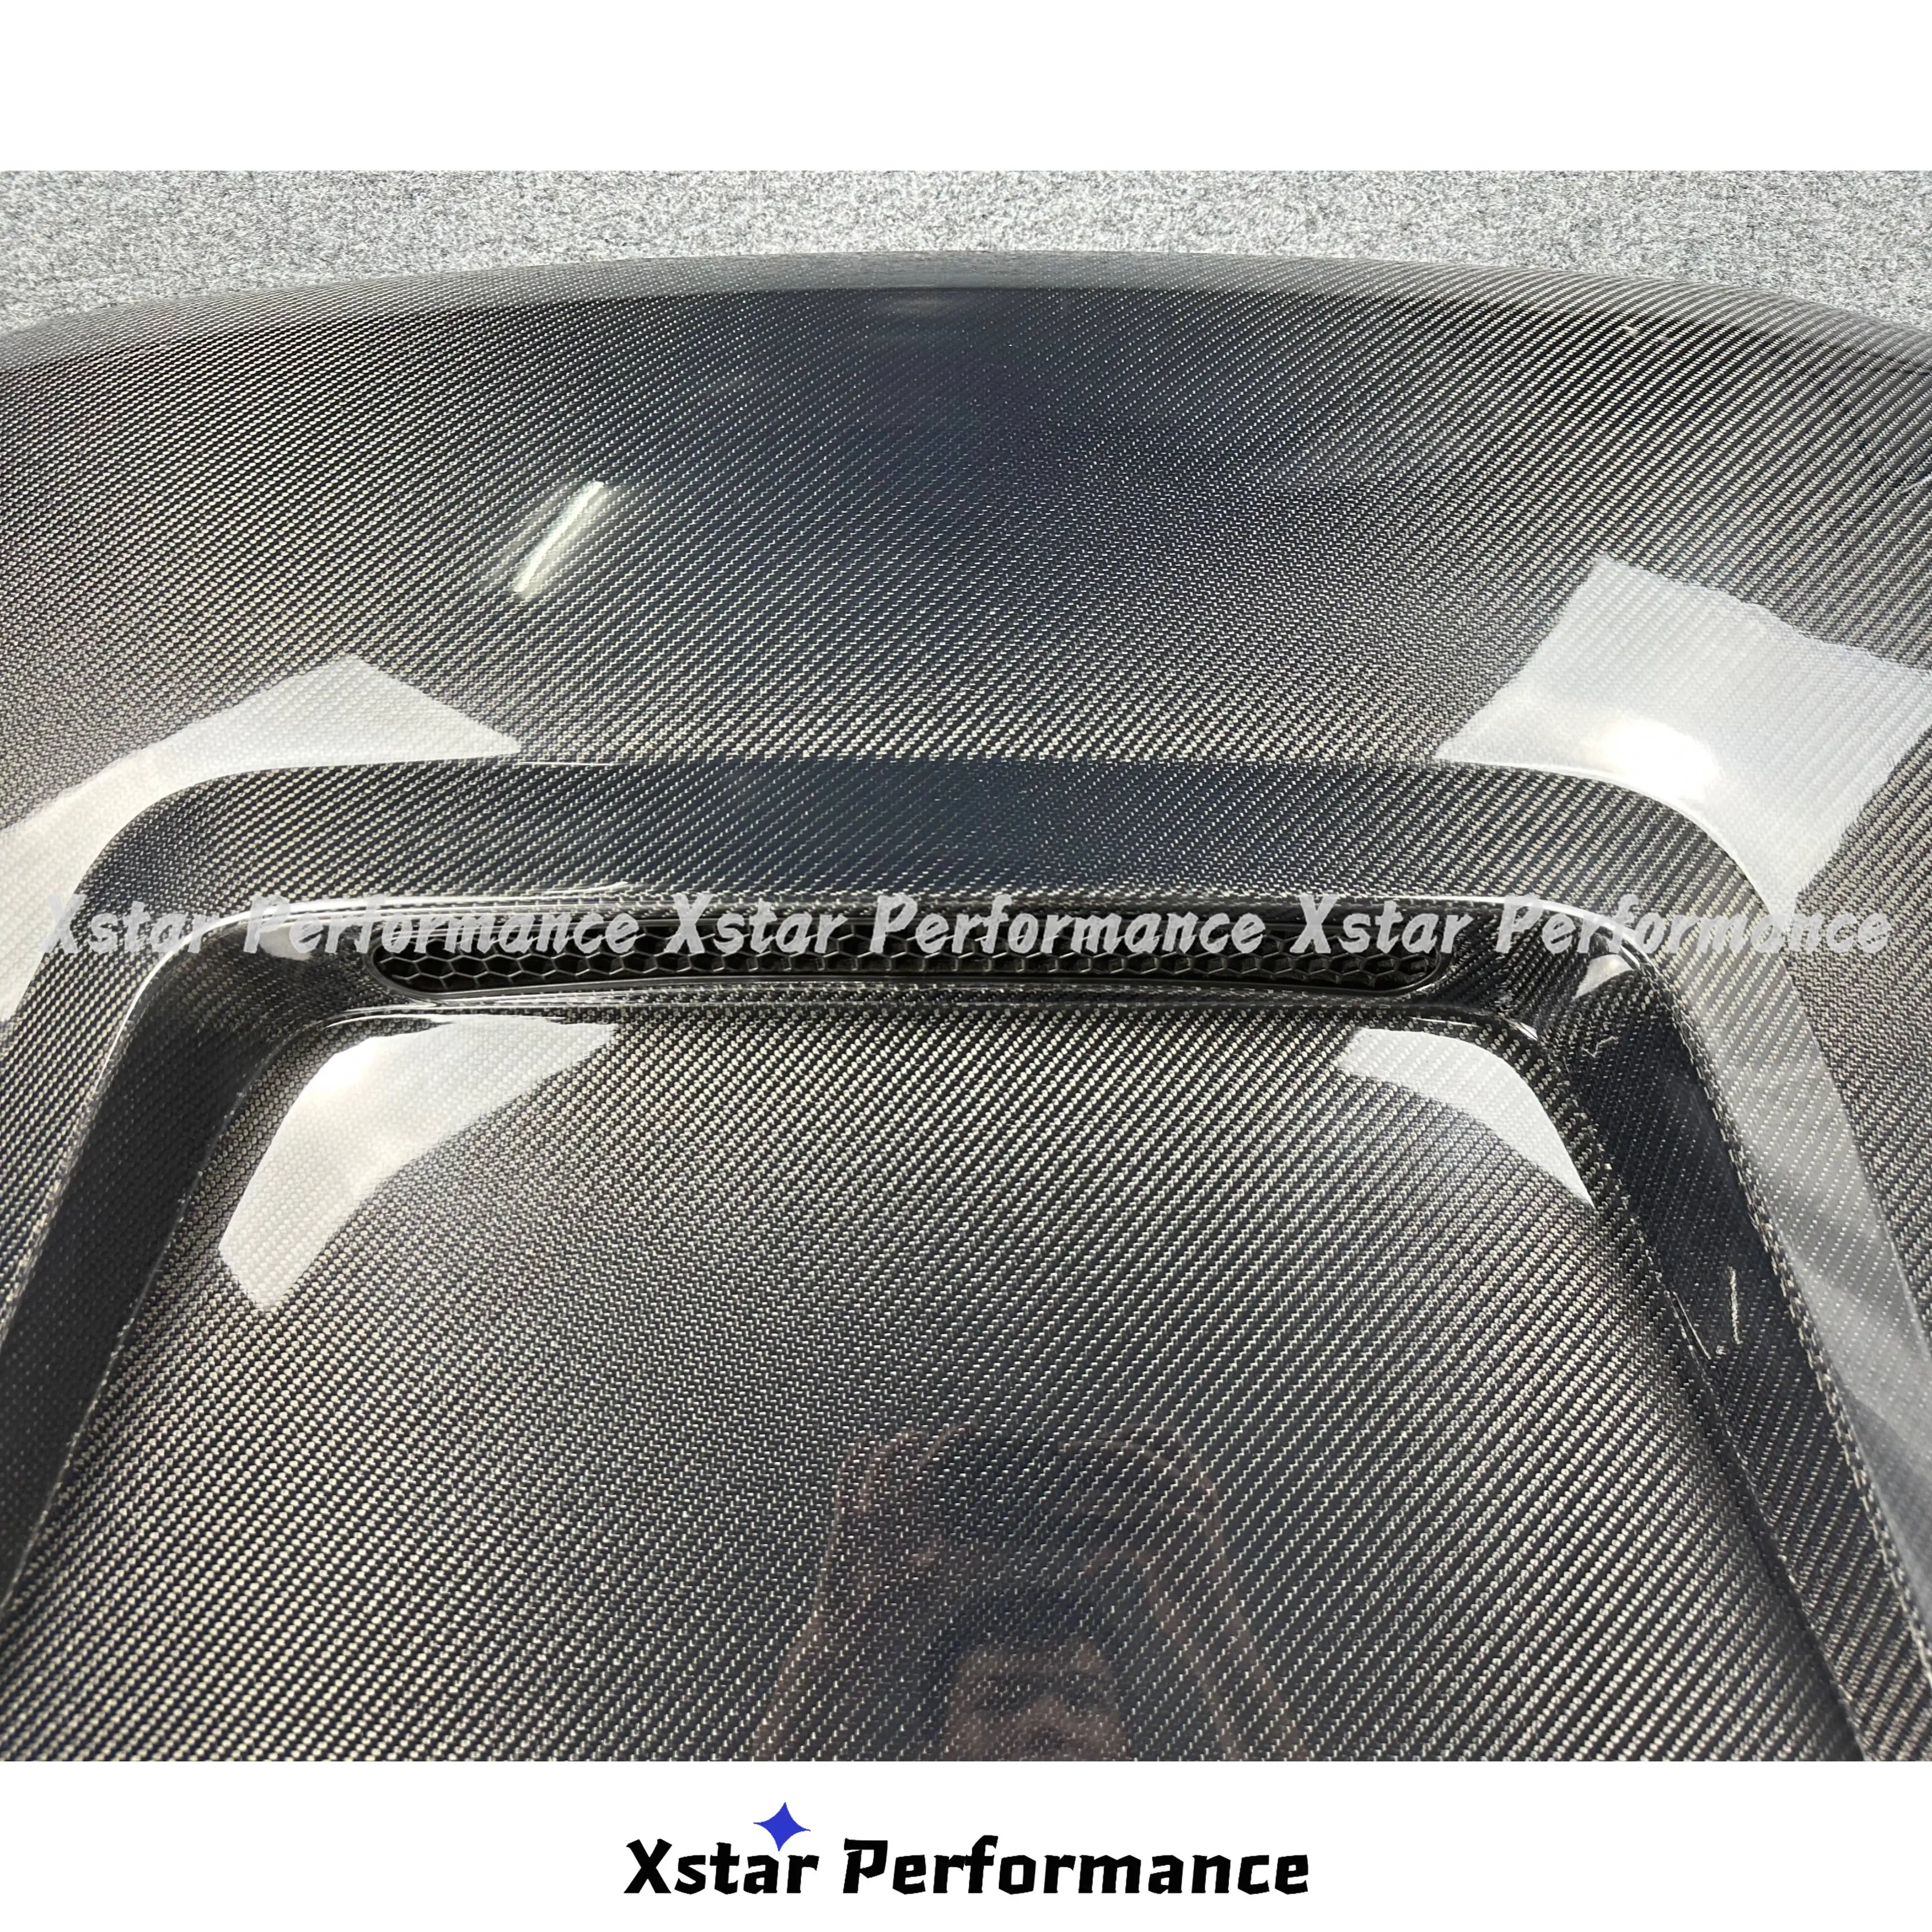 Xstar Performance Vent Style Carbon Fiber Hood Bonnet For Audis A4 B8.5 S4 2013-2016